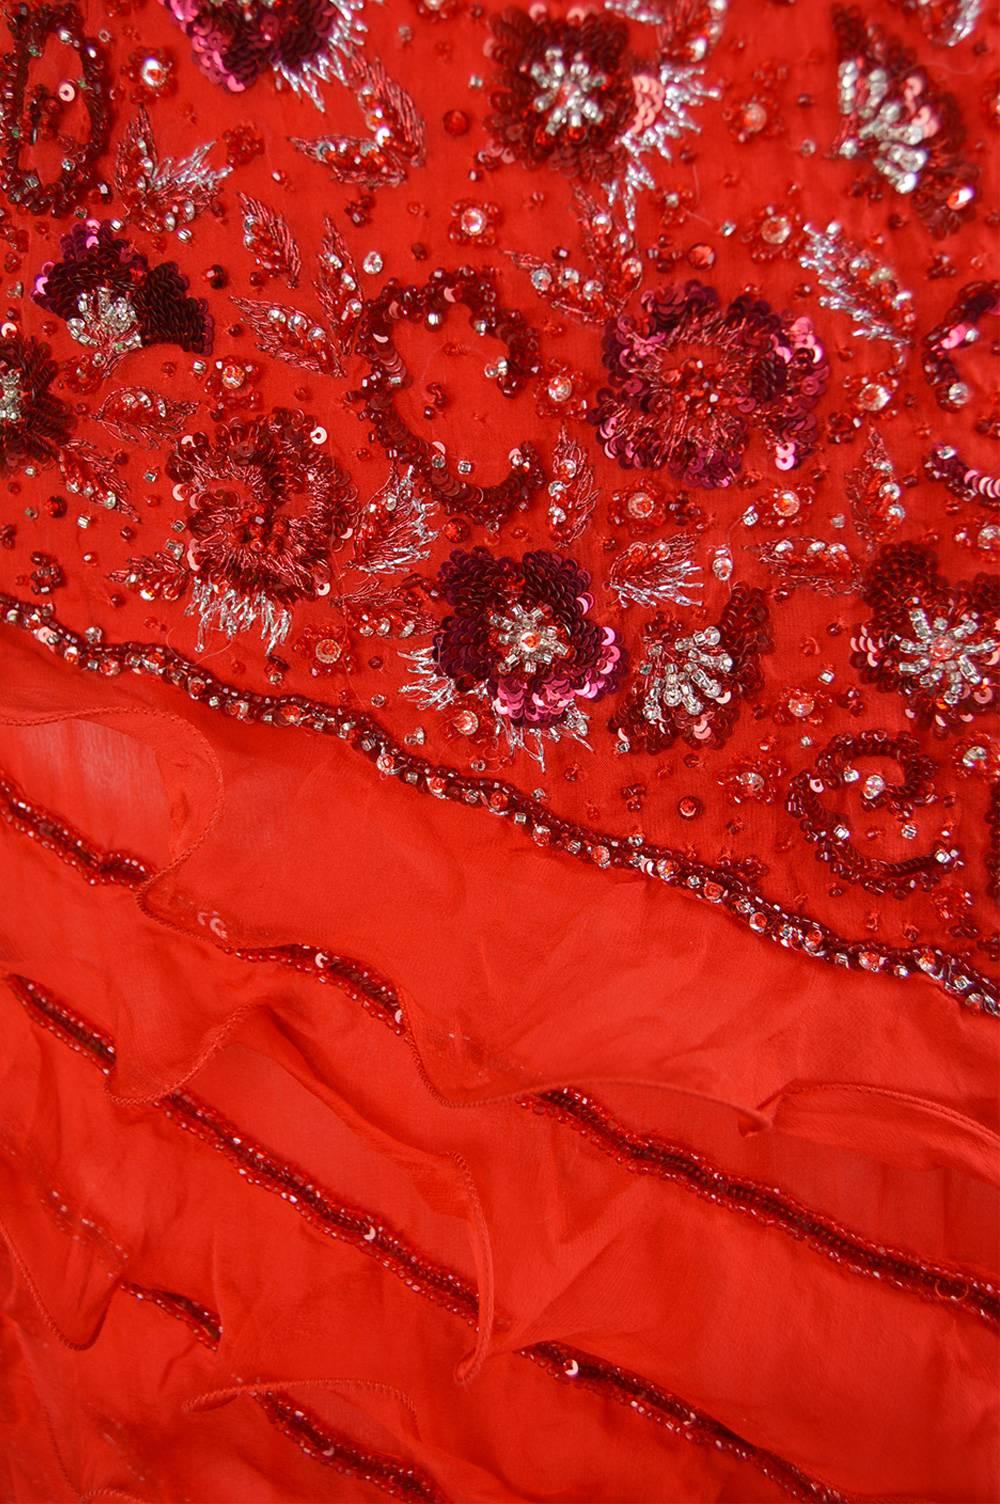 Women's Renato Balestra Italian Haute Couture Beaded Red Silk Flamenco Gown, A / W 1997